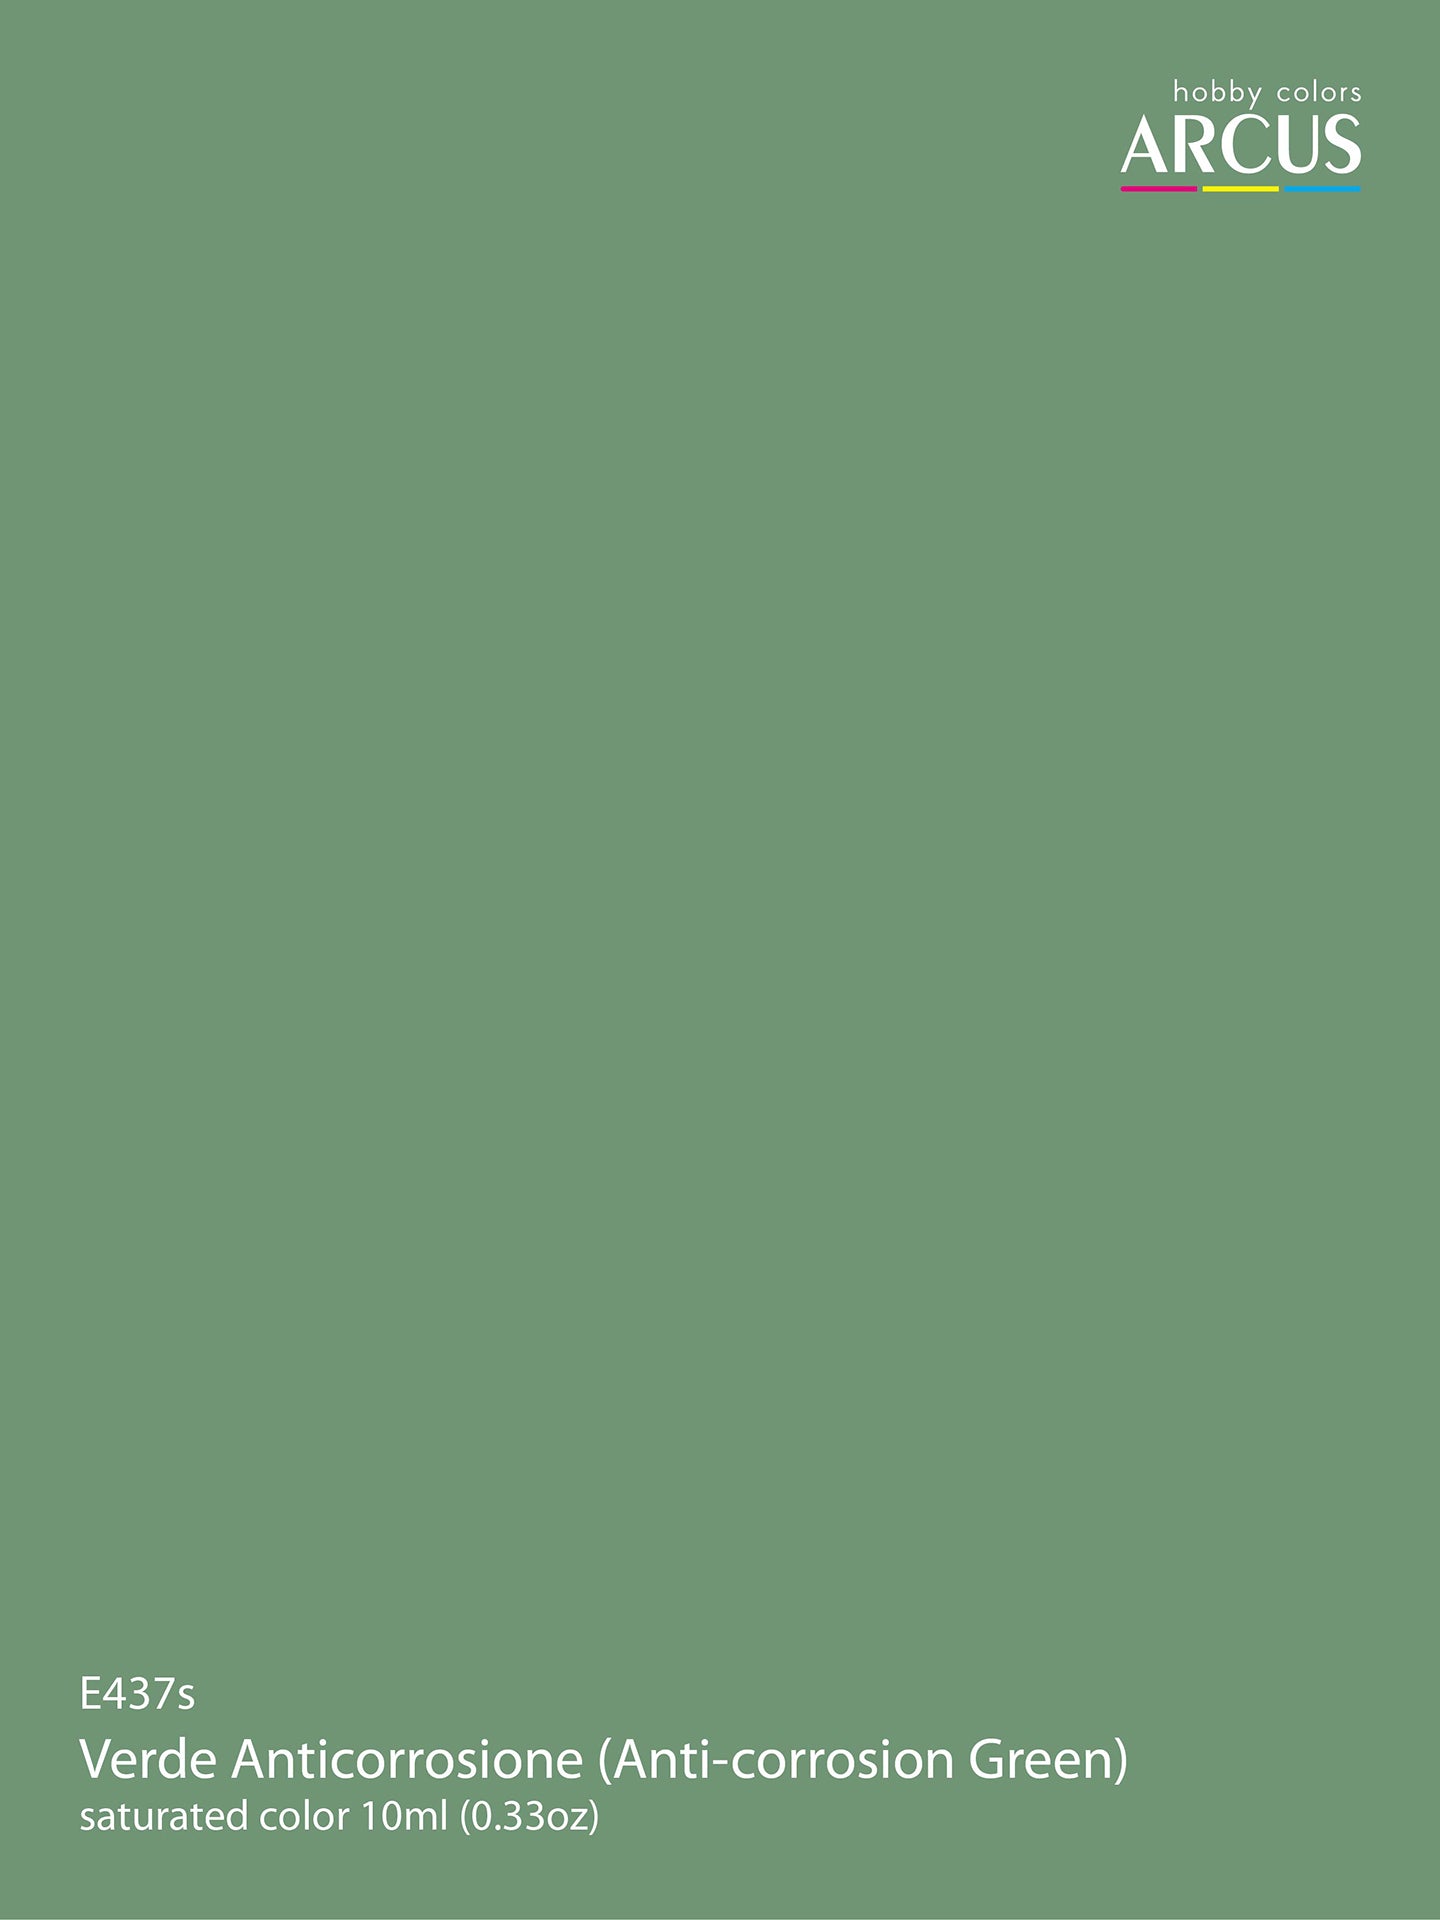 437 Verde Anticorrosione (Anti-corrosion Green)